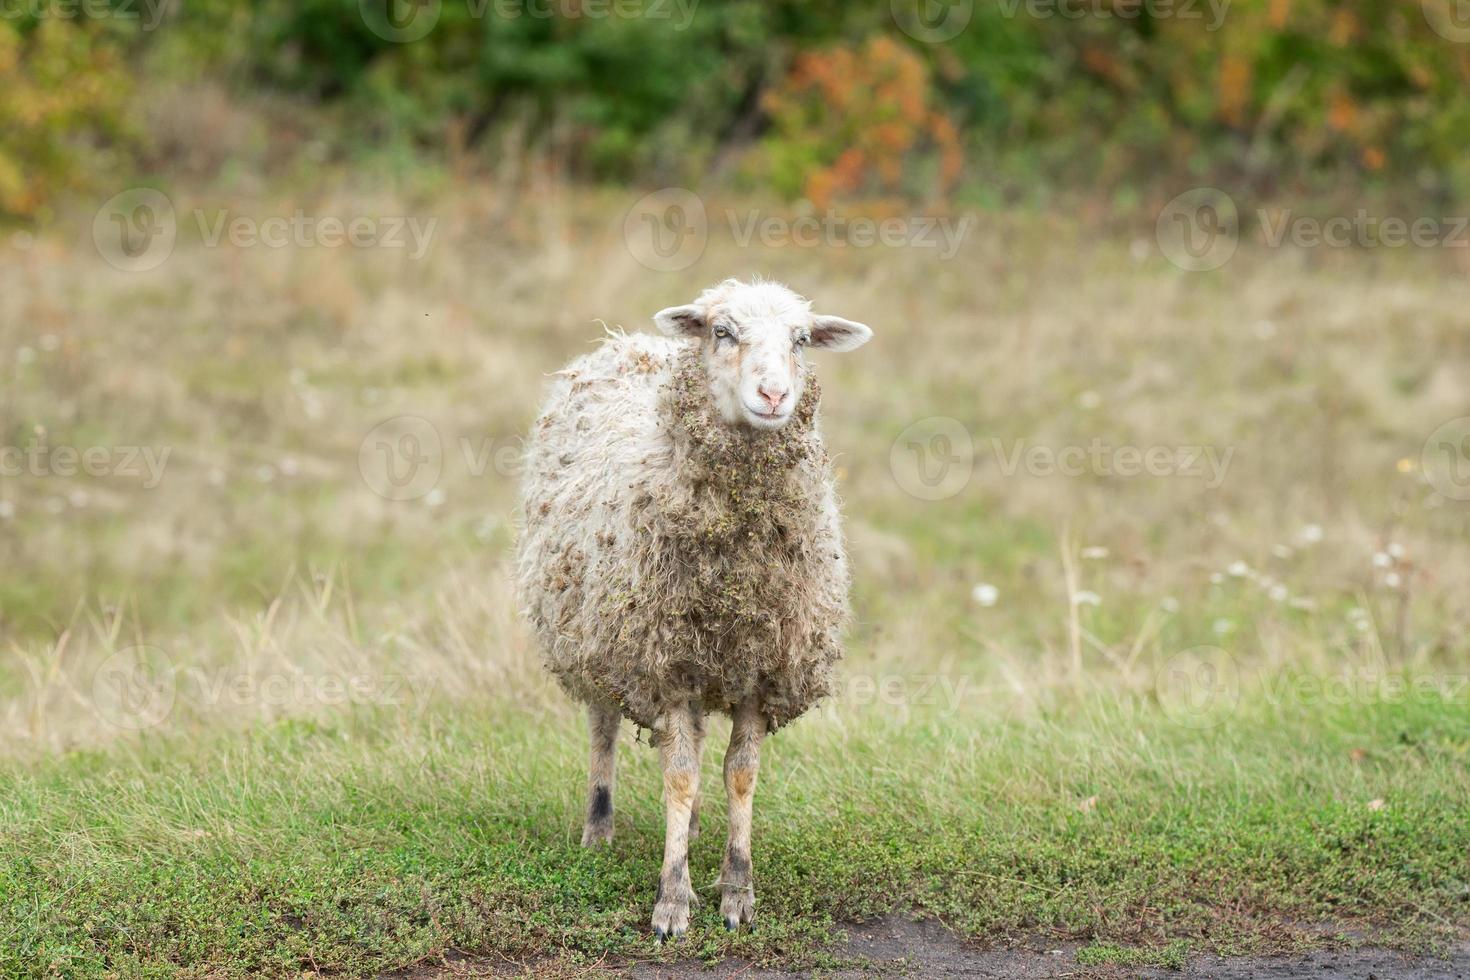 Schafe und Lamm auf grünem Gras. foto